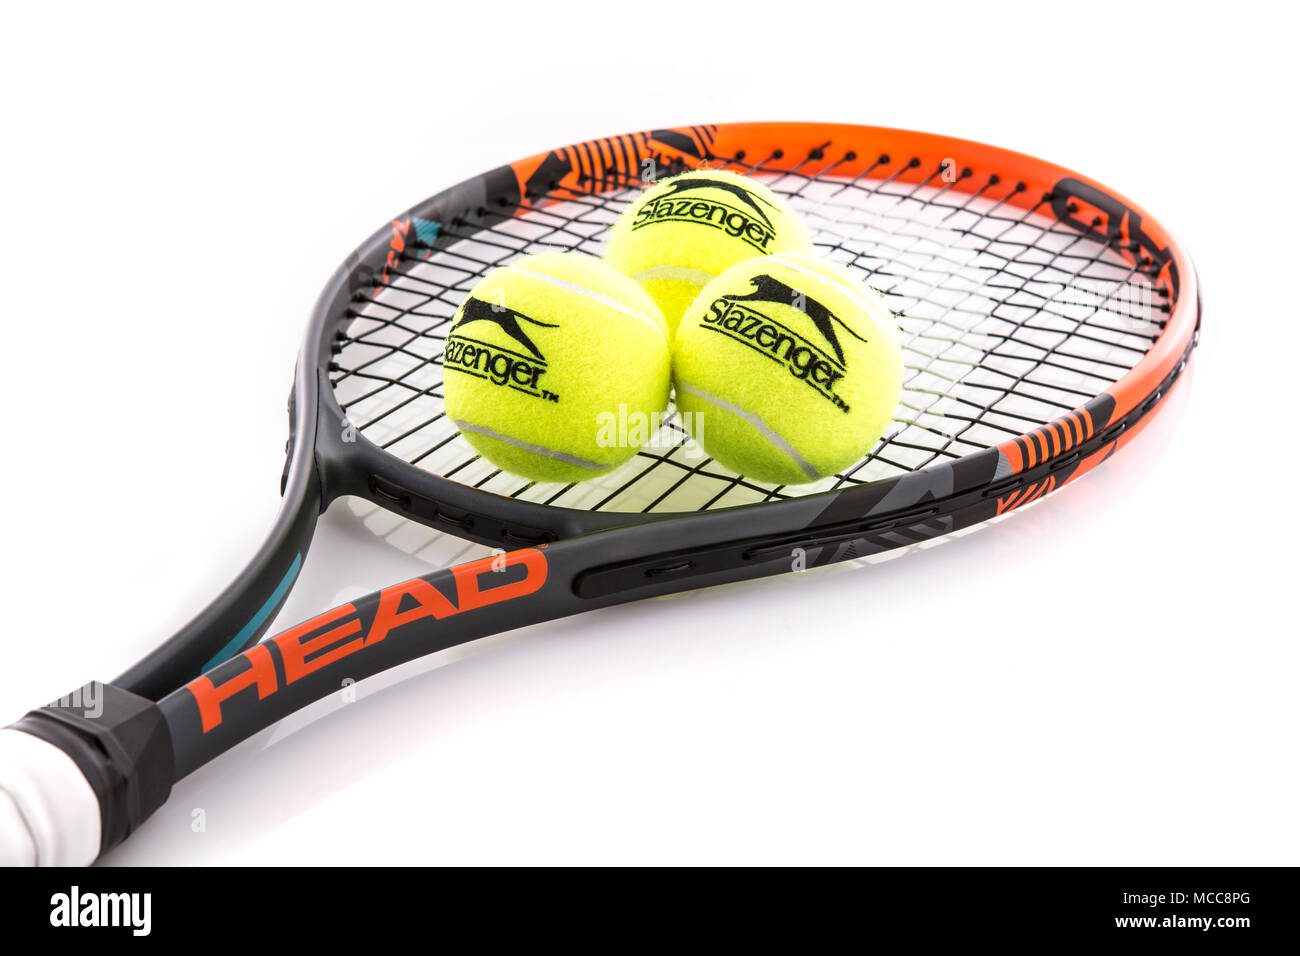 SWINDON, Royaume-Uni - 15 avril 2018 : Head raquette de tennis et de balle Slazenger sur fond blanc Banque D'Images